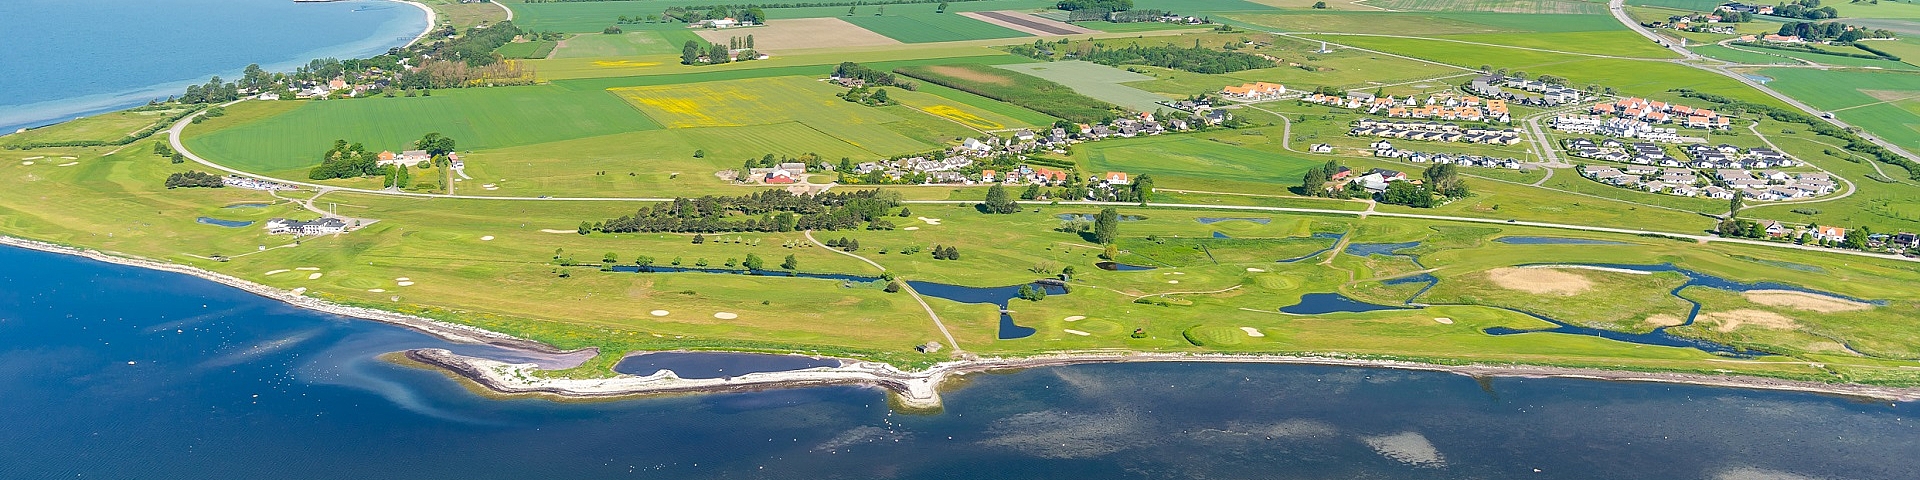 Trelleborgs Golfklubb